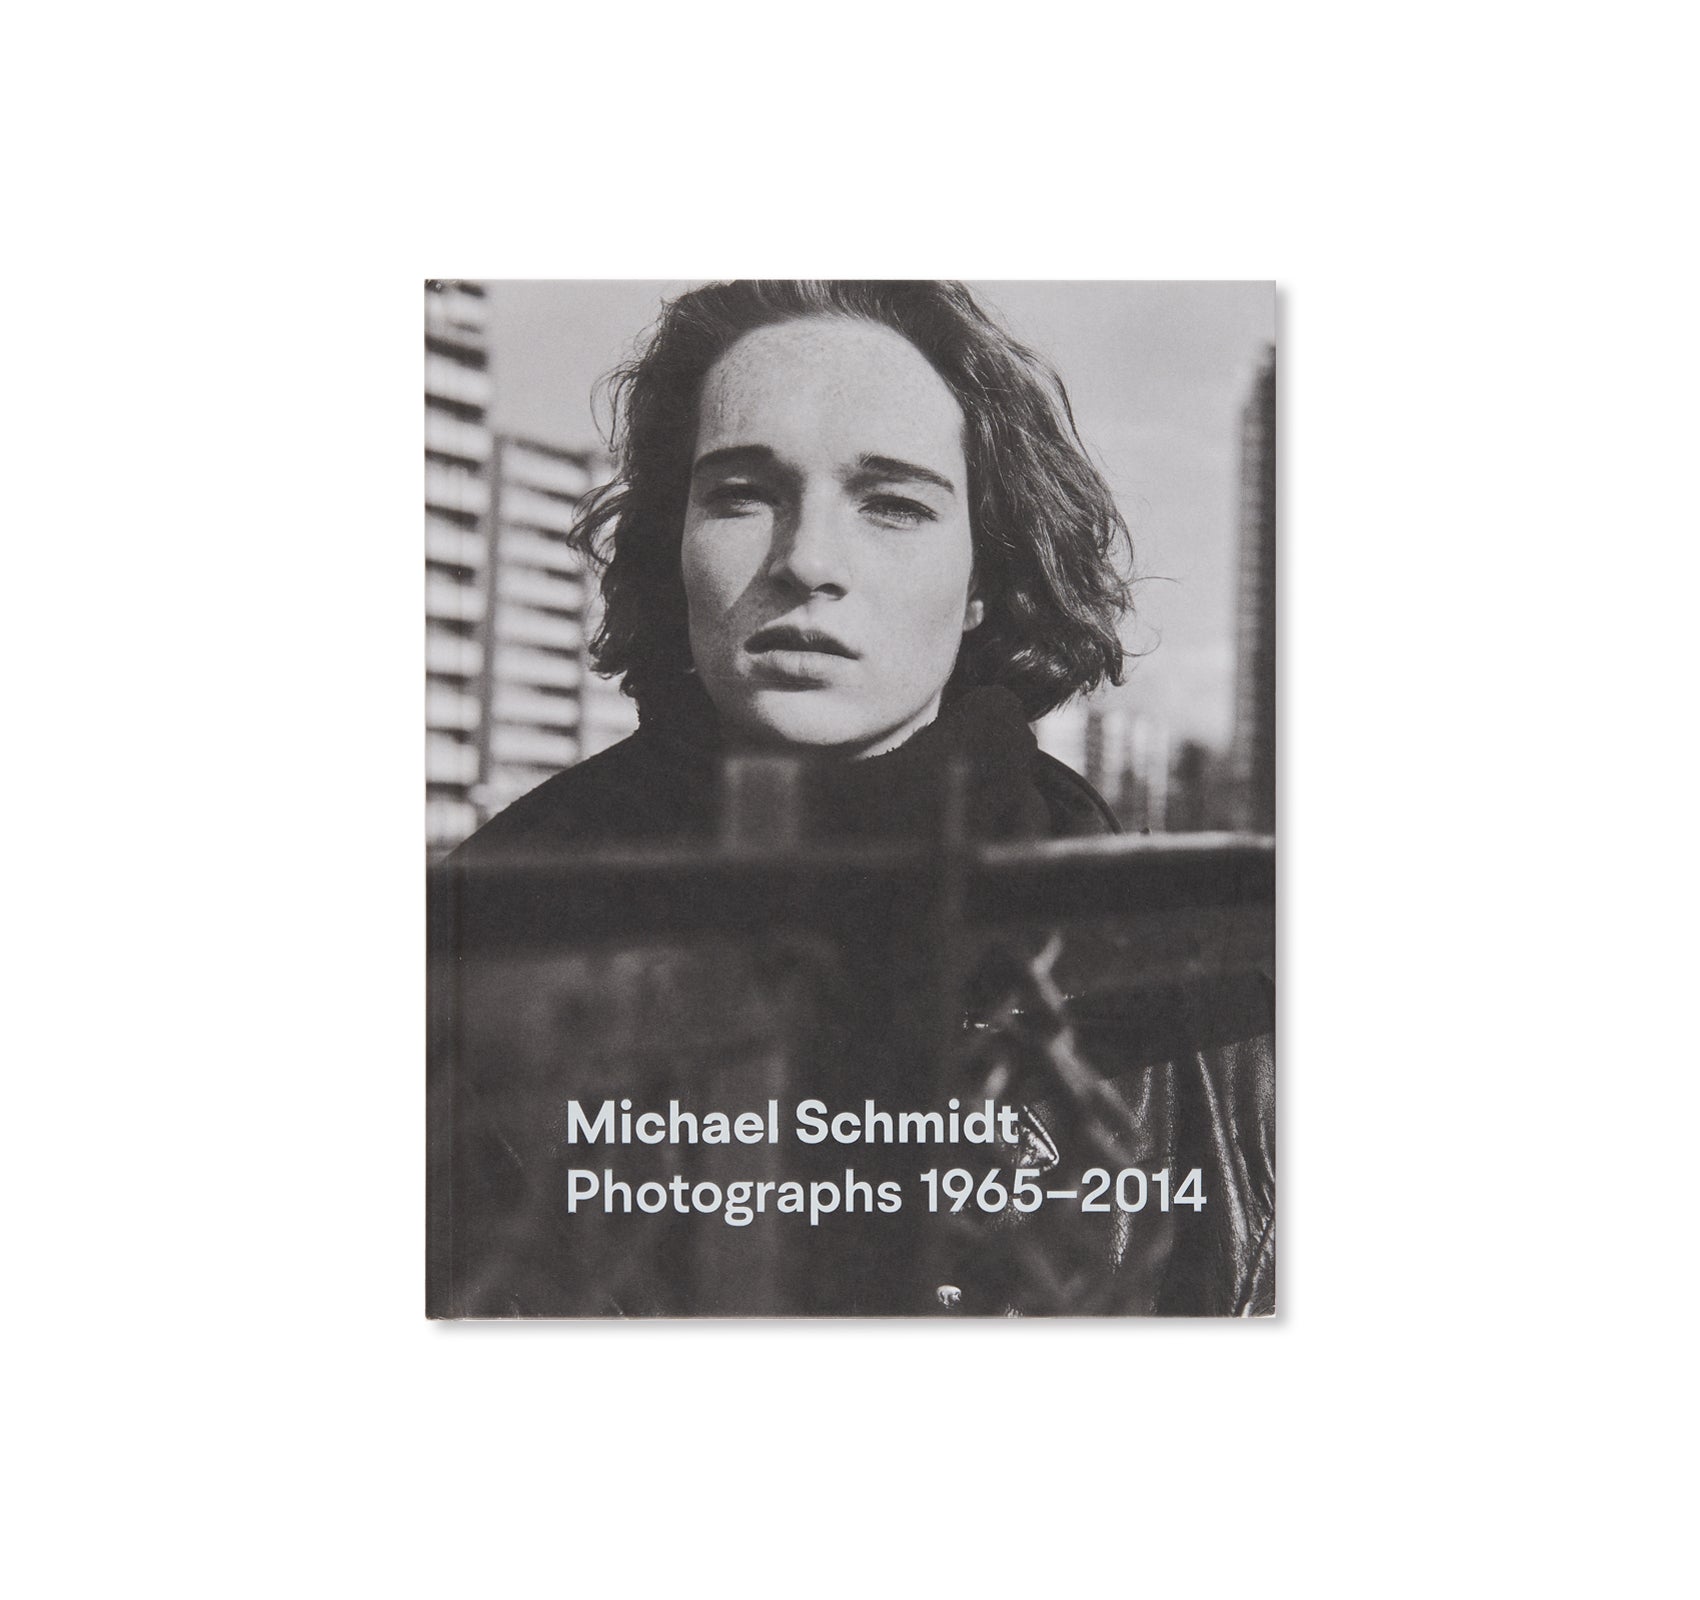 PHOTOGRAPHS 1965-2014 by Michael Schmidt